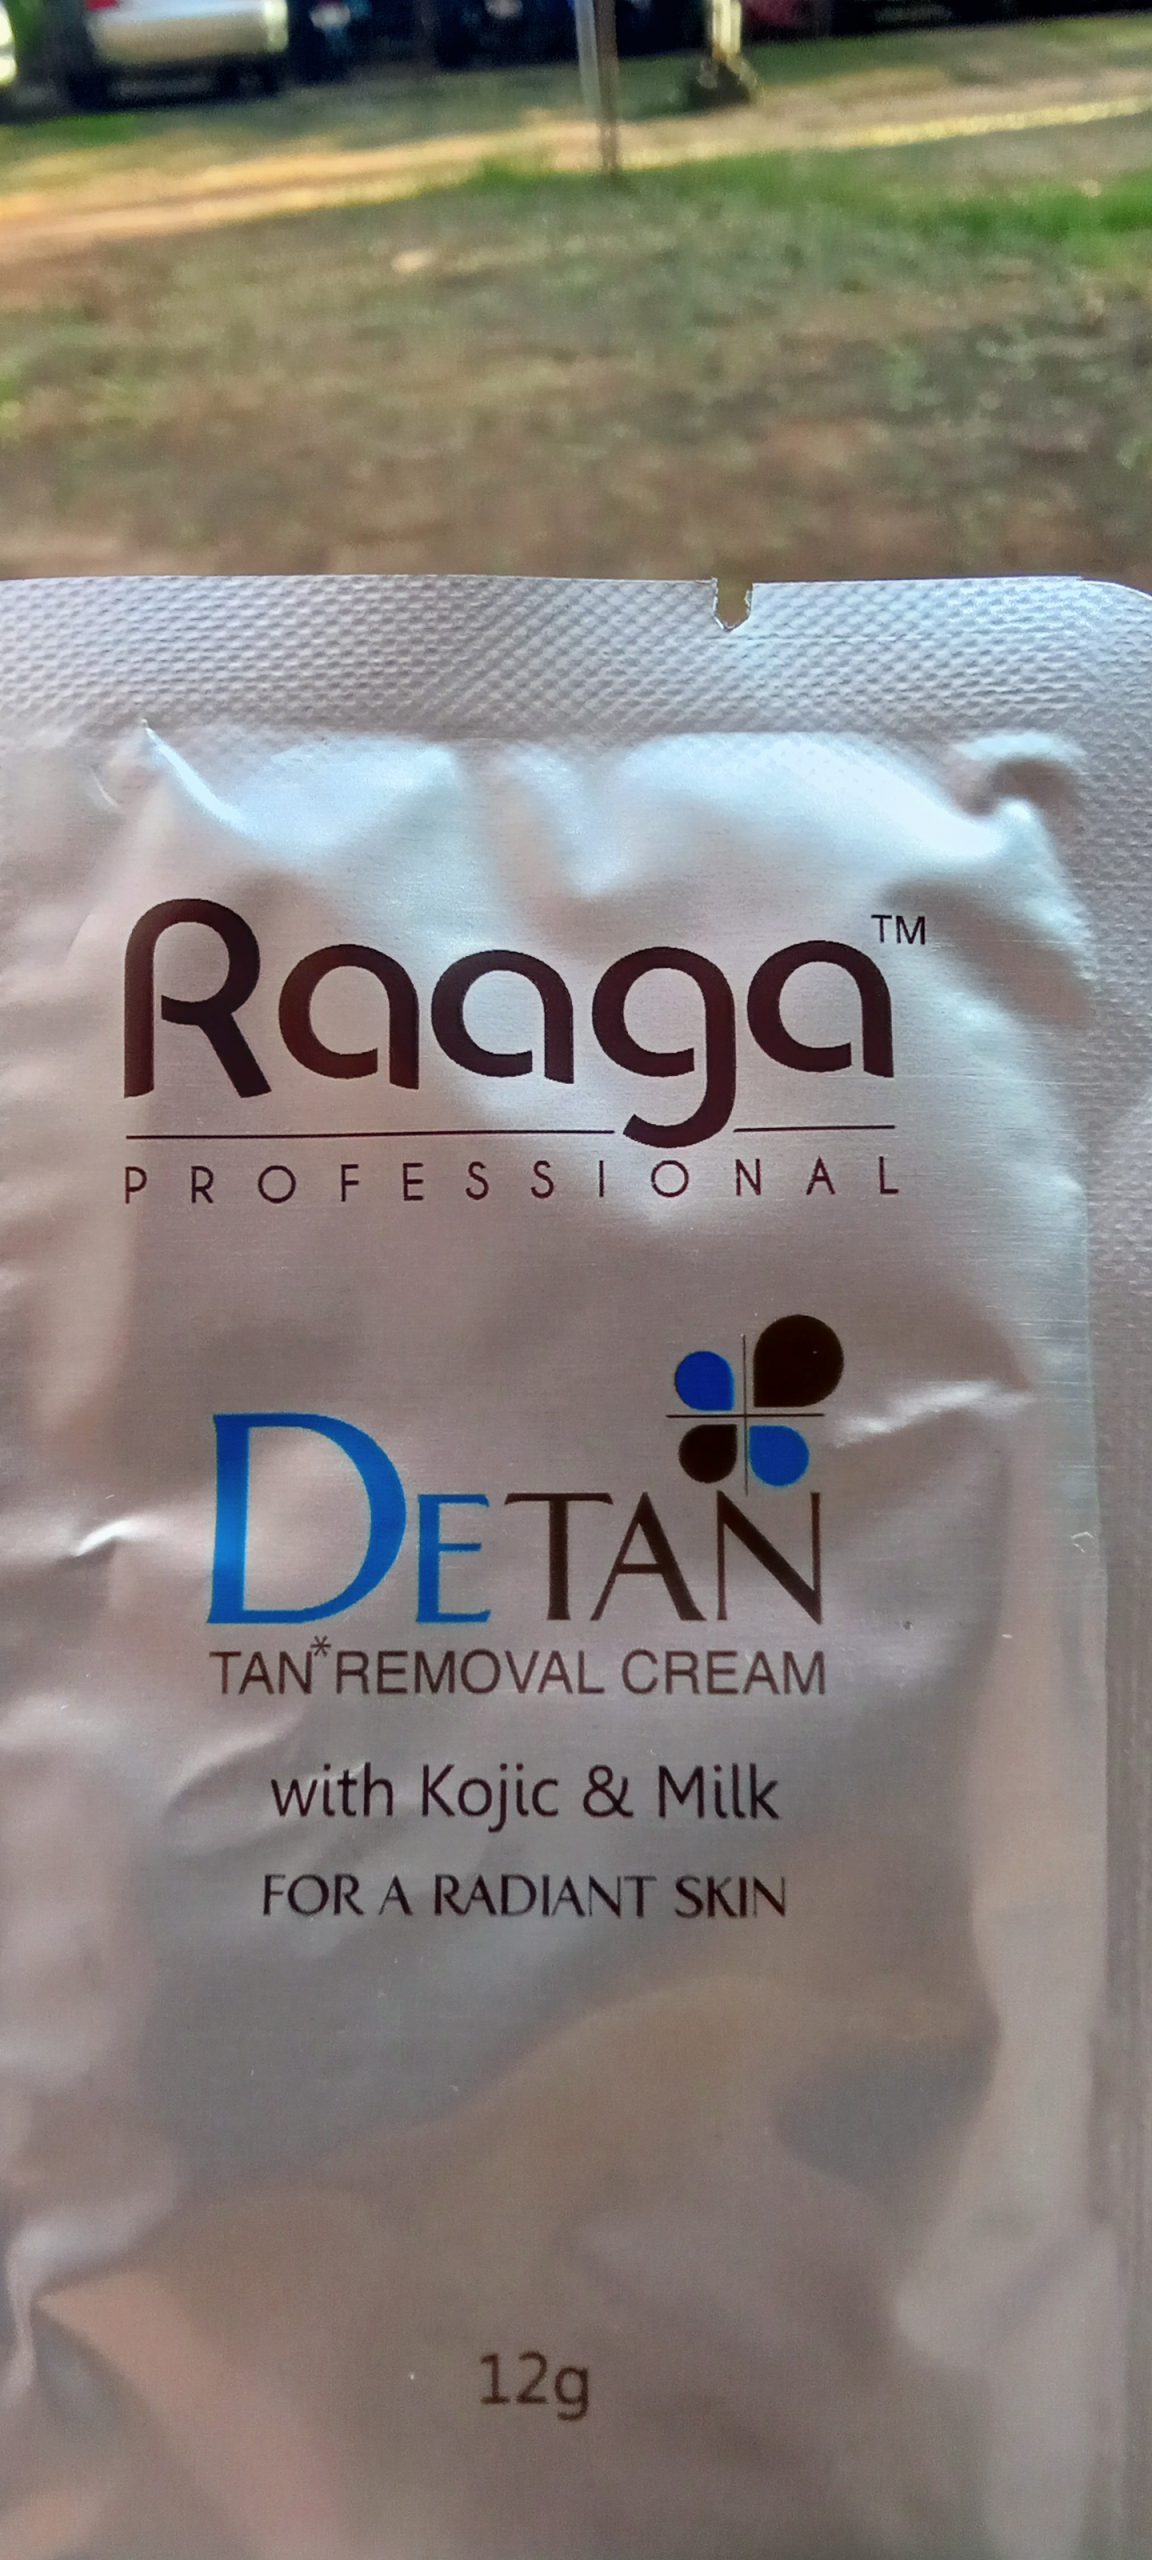 Raaga De-Tan Tan removal Cream Review